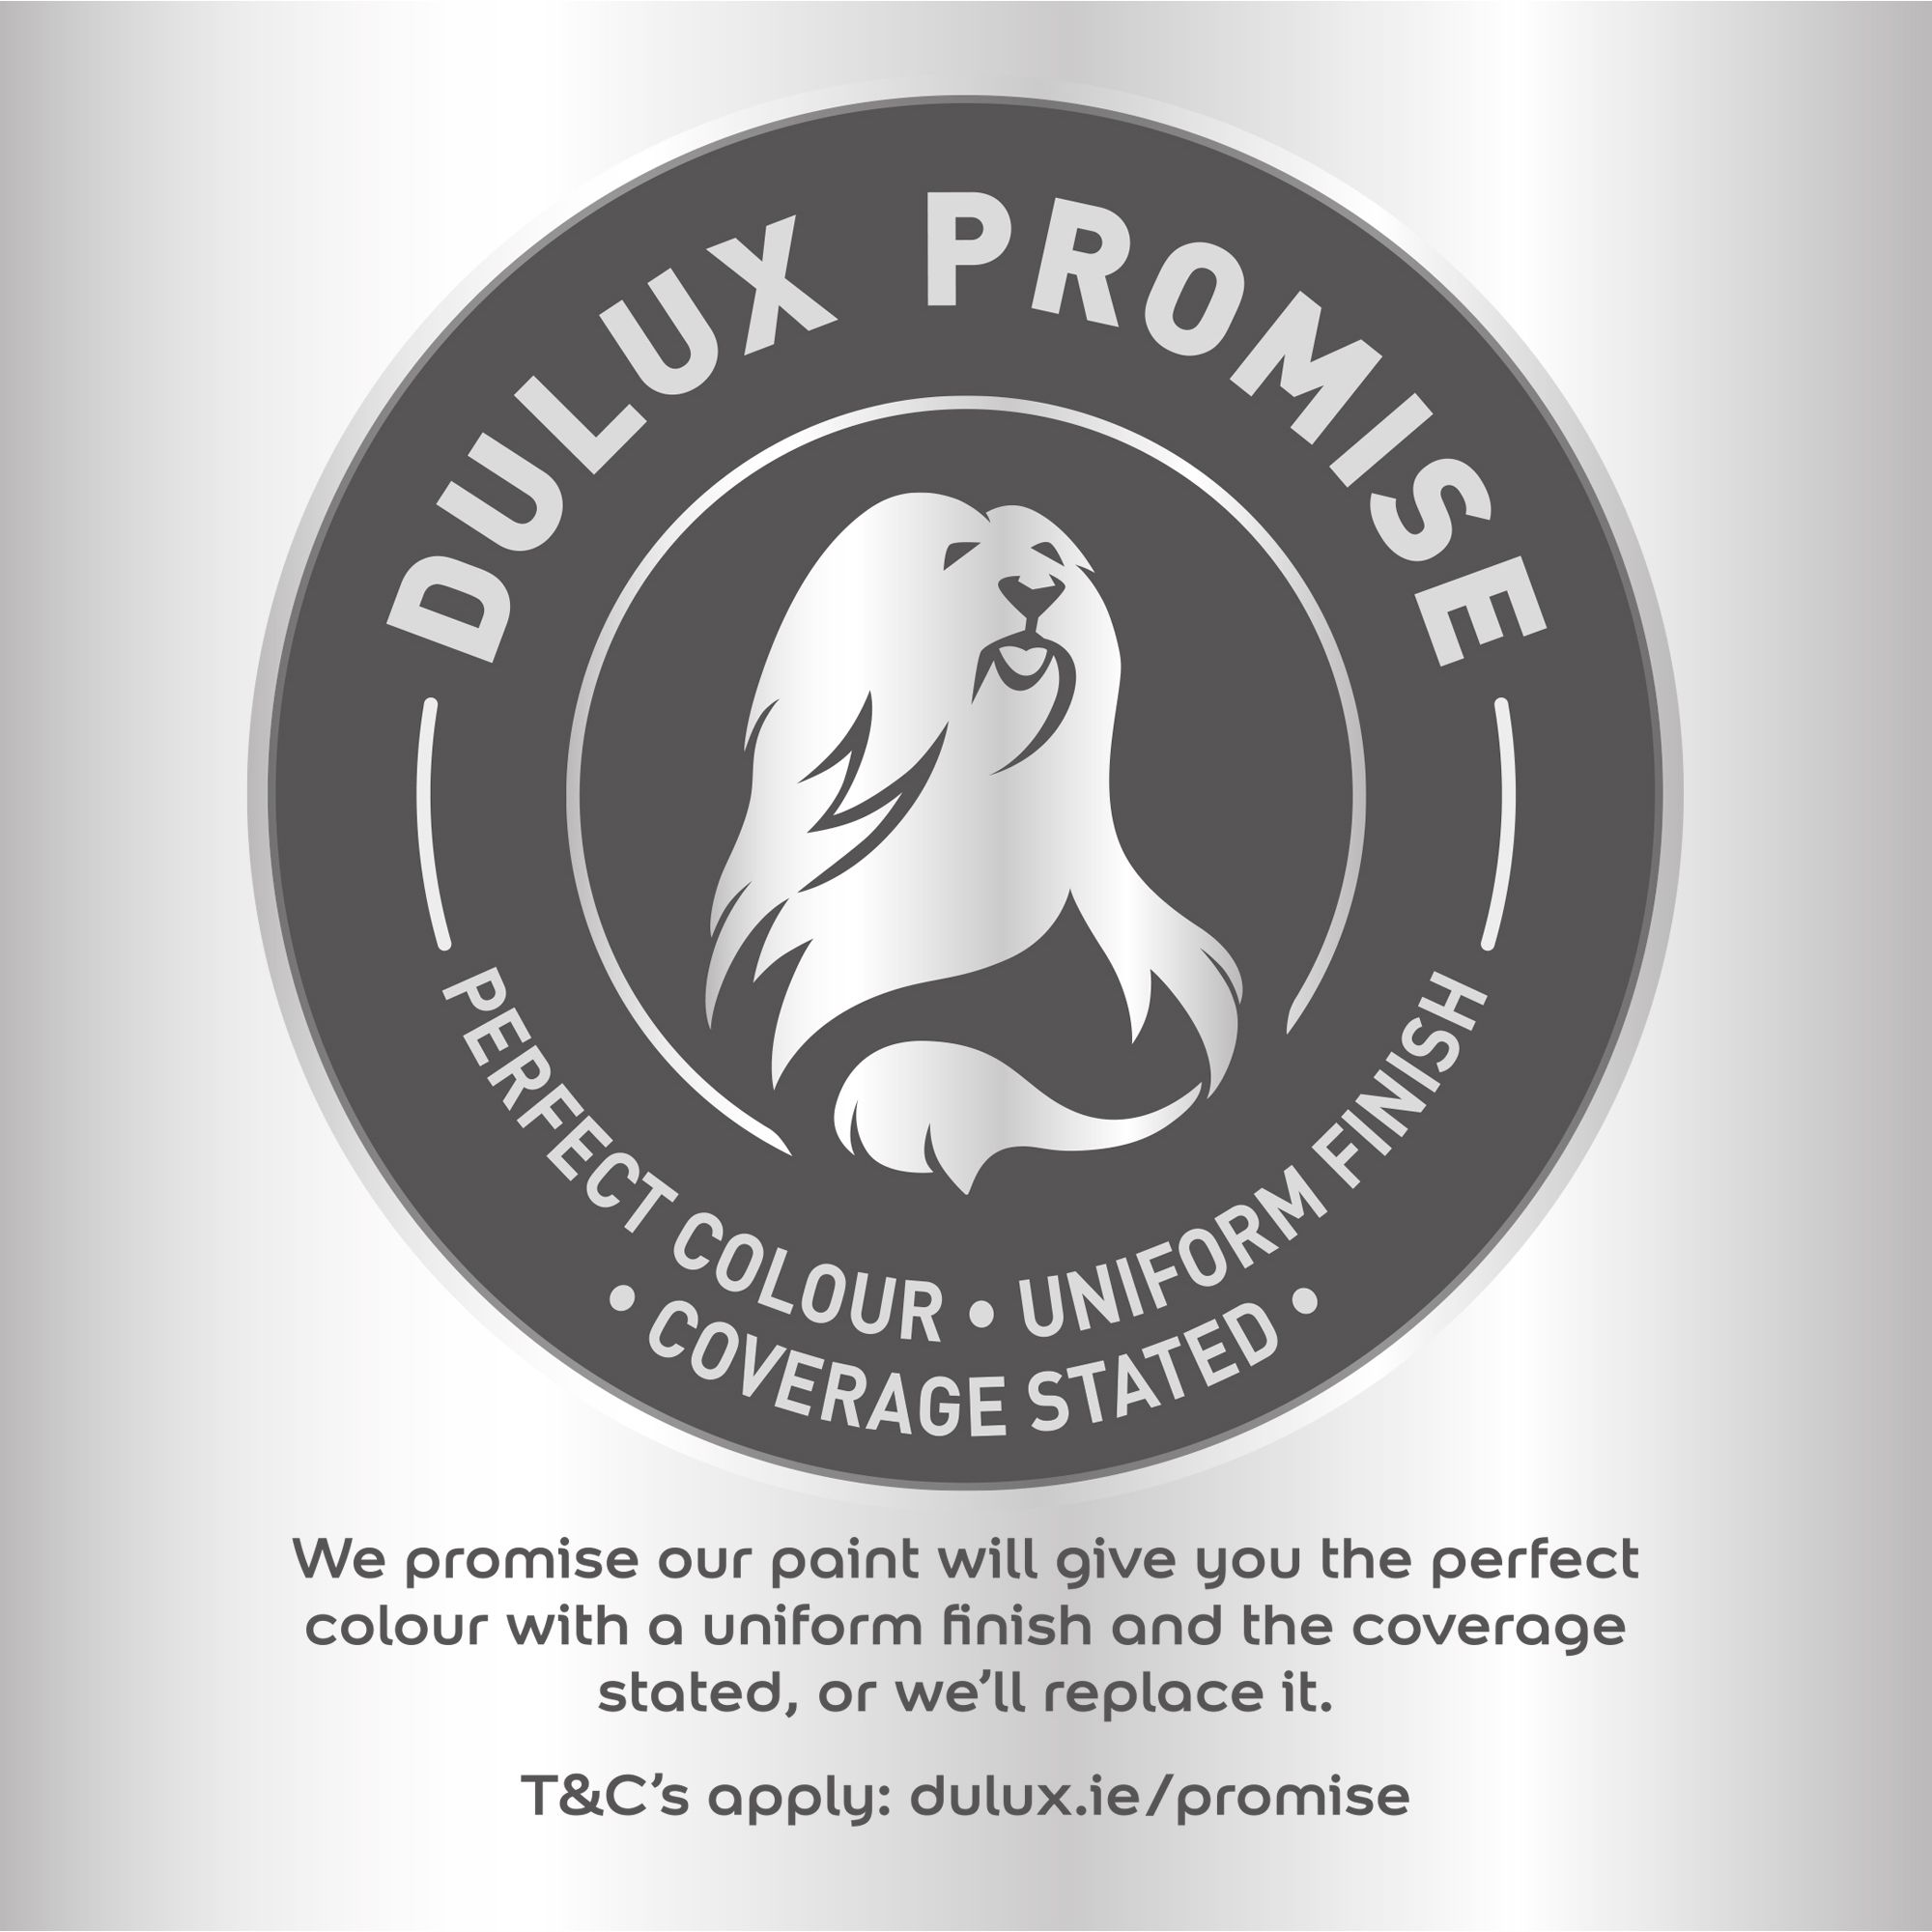 Dulux Easycare Buttermilk Vinyl matt Emulsion paint, 5L